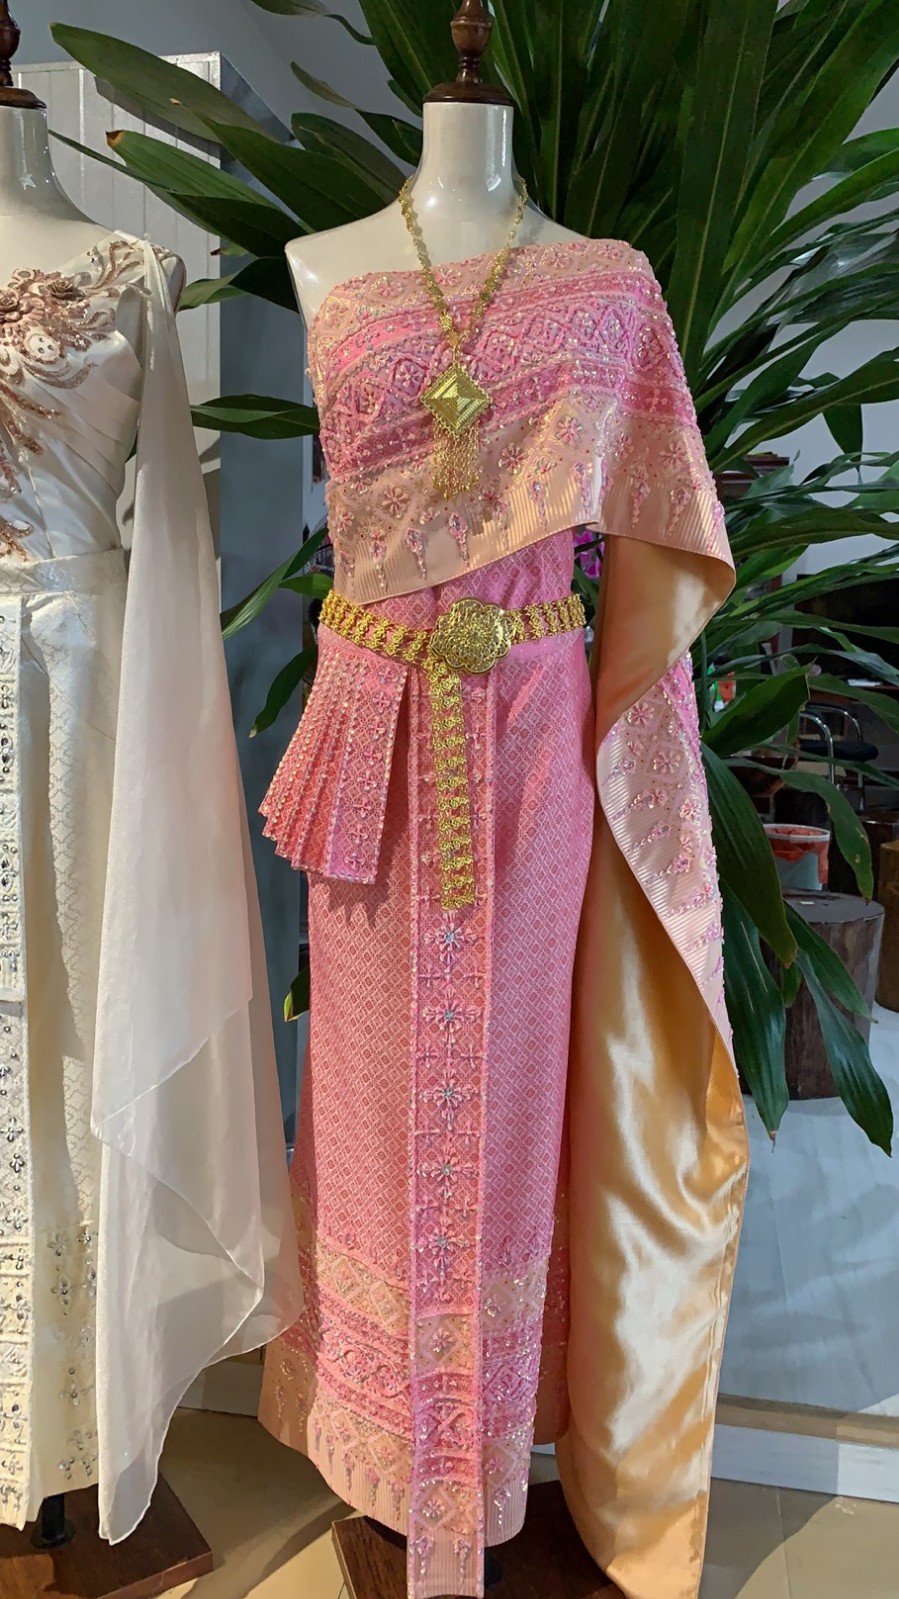 结婚礼服傣族泰式粉红色露肩斜肩带披肩结婚订婚婚纱摄影礼服